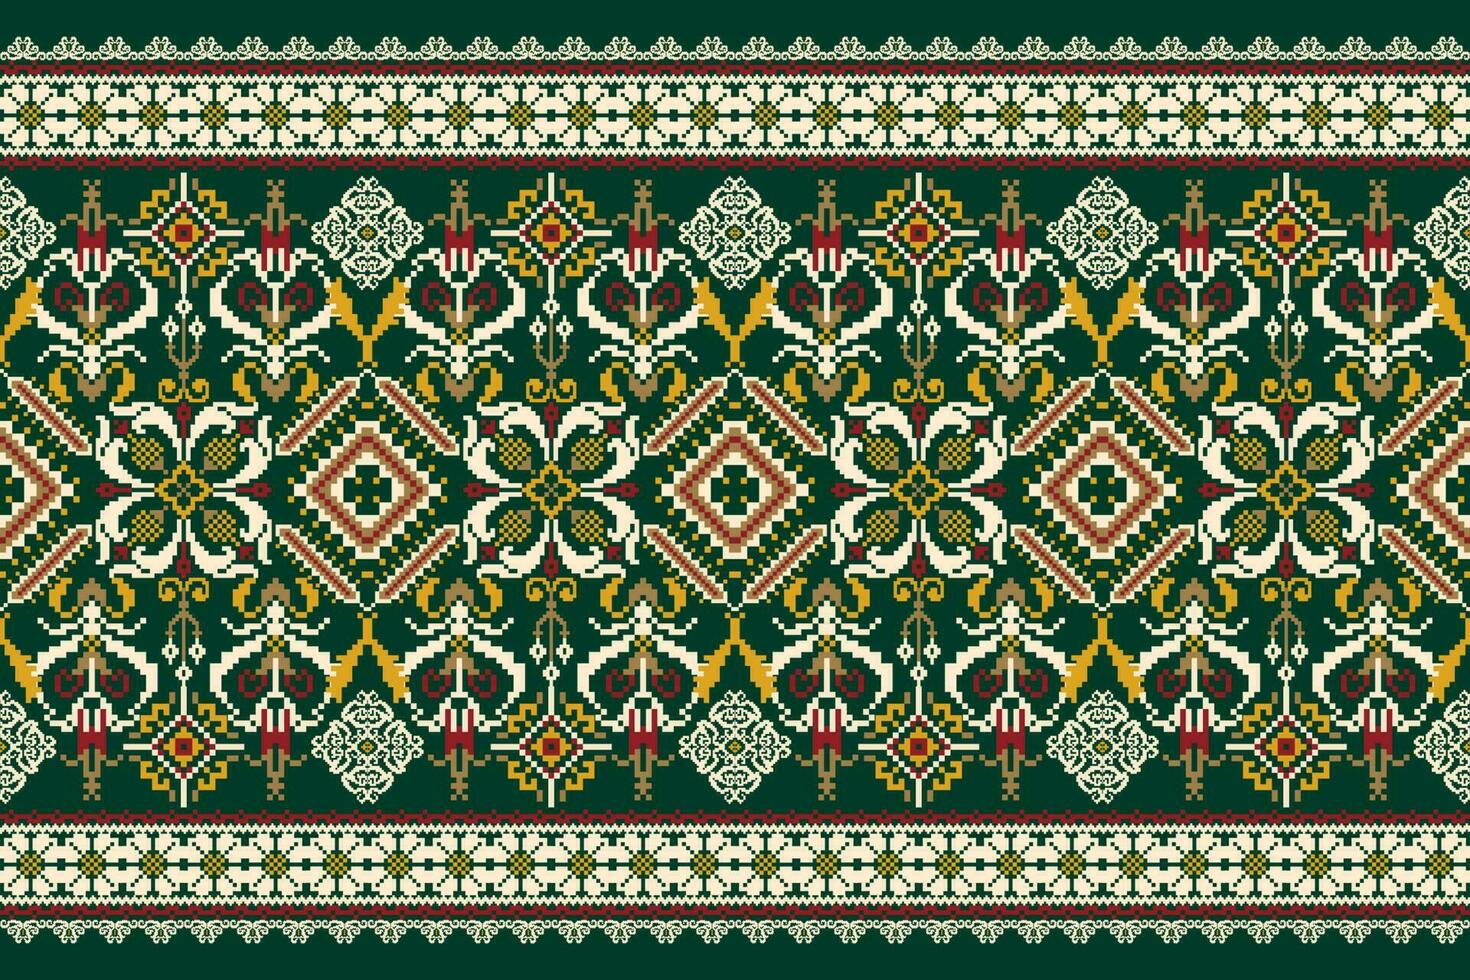 bordado de ponto de cruz floral em verde background.geometric étnica oriental padrão tradicional. asteca estilo abstrato vector illustration.design para textura, tecido, roupas, embrulho, decoração, cachecol.